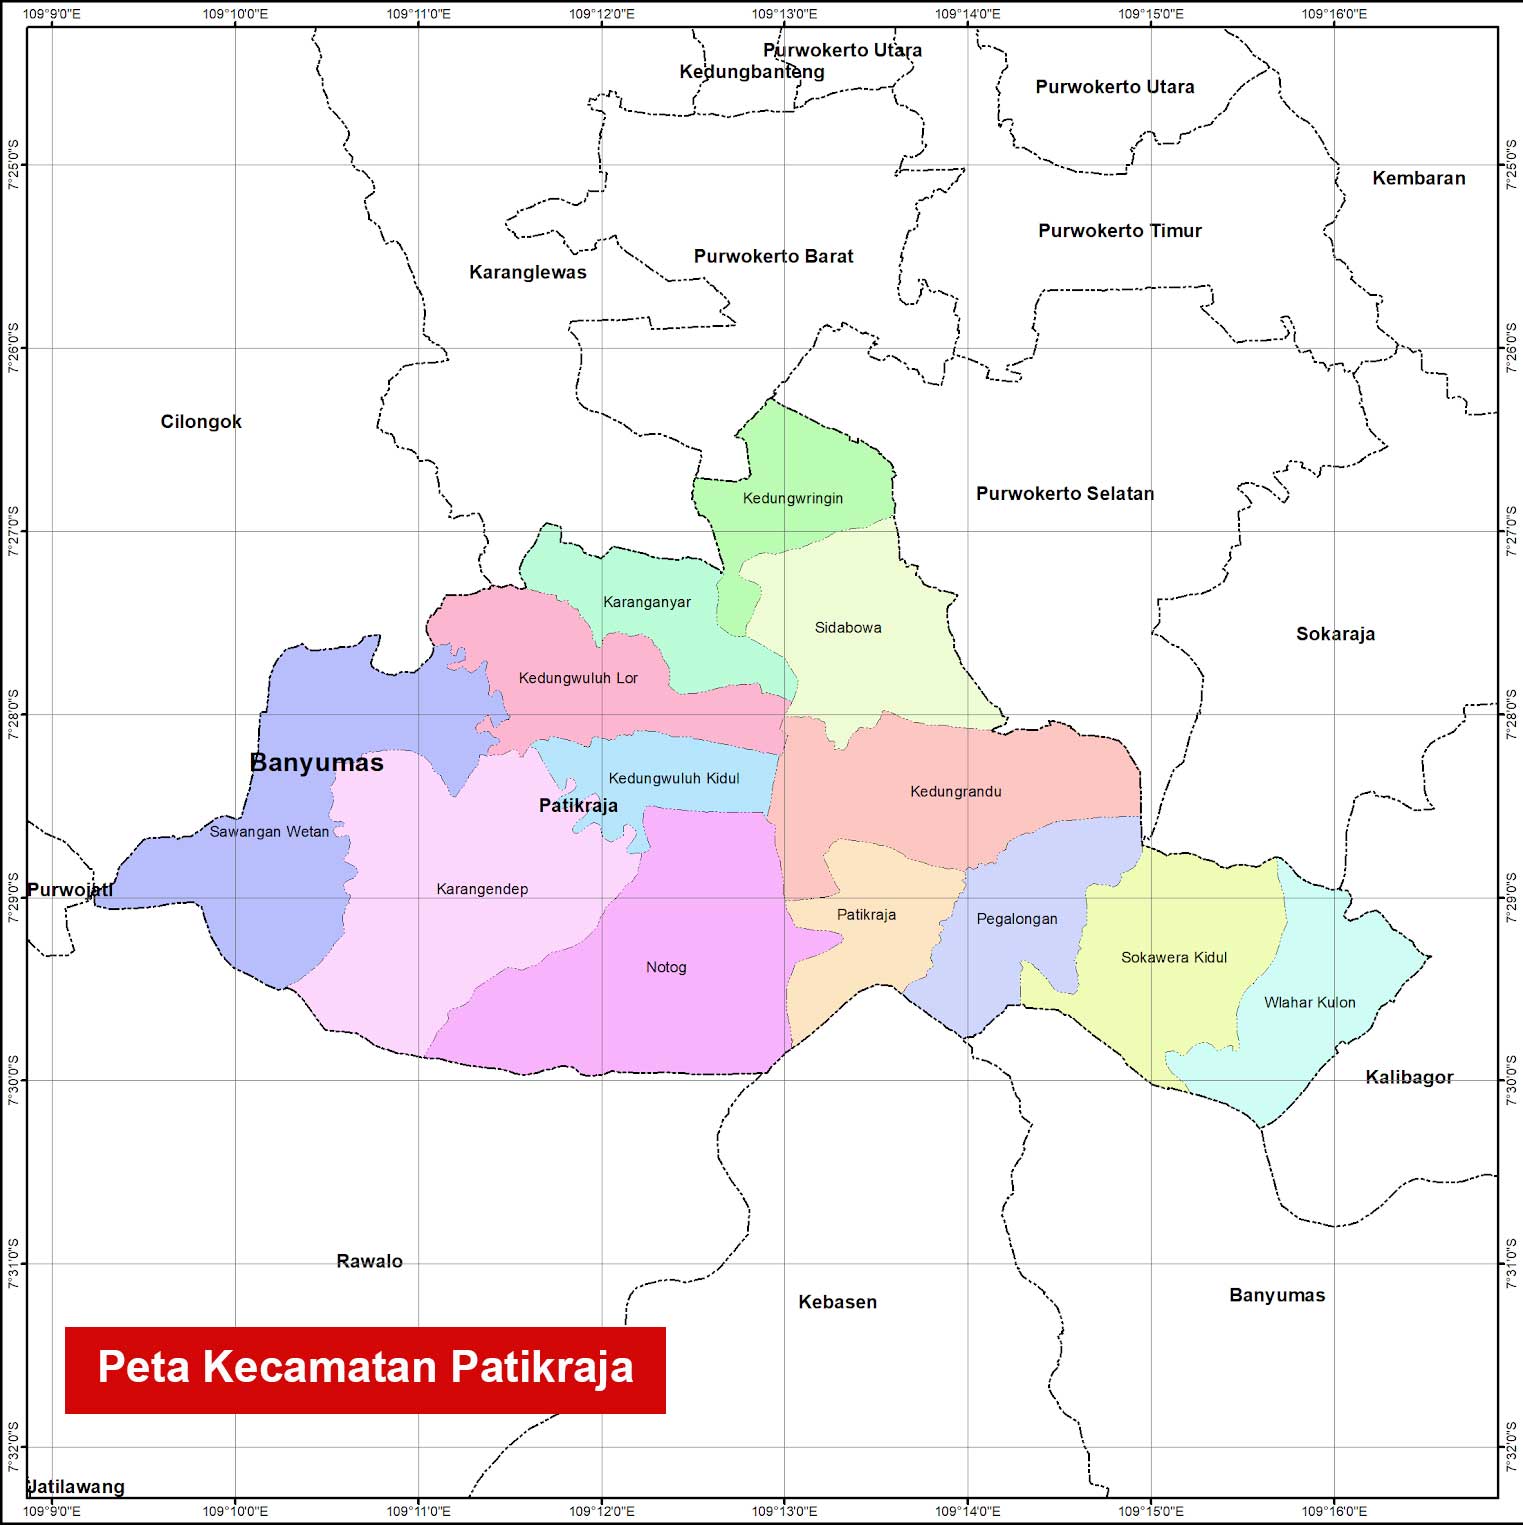 Peta Kecamatan Patikraja